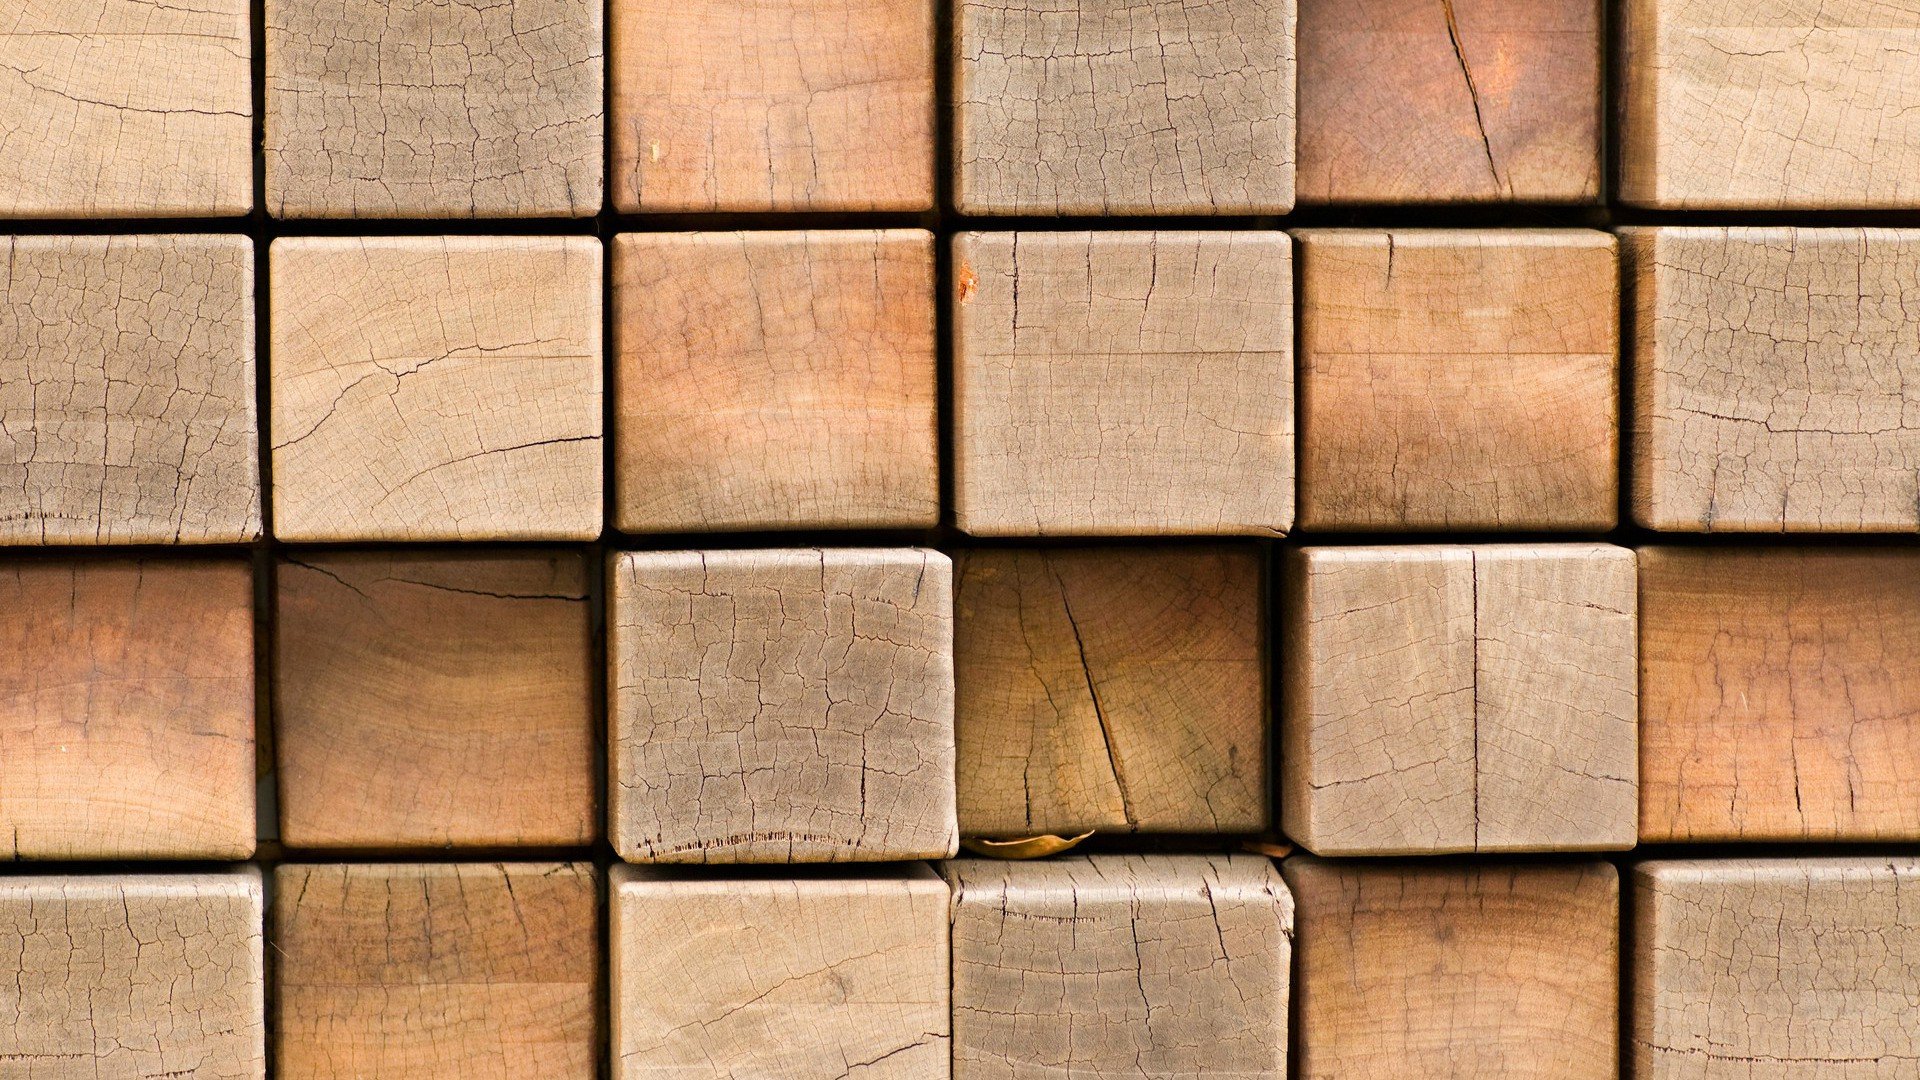 Bộ sưu tập gỗ với những khối hình đơn giản, hài hòa và lạ mắt. Tất cả các phiên bản gỗ rất đáng để sở hữu và trưng bày trong căn nhà của bạn. Tại sao bạn không đón nhận sự tinh tế và độc đáo của bộ sưu tập này bằng cách bấm vào để xem chúng ngay bây giờ?